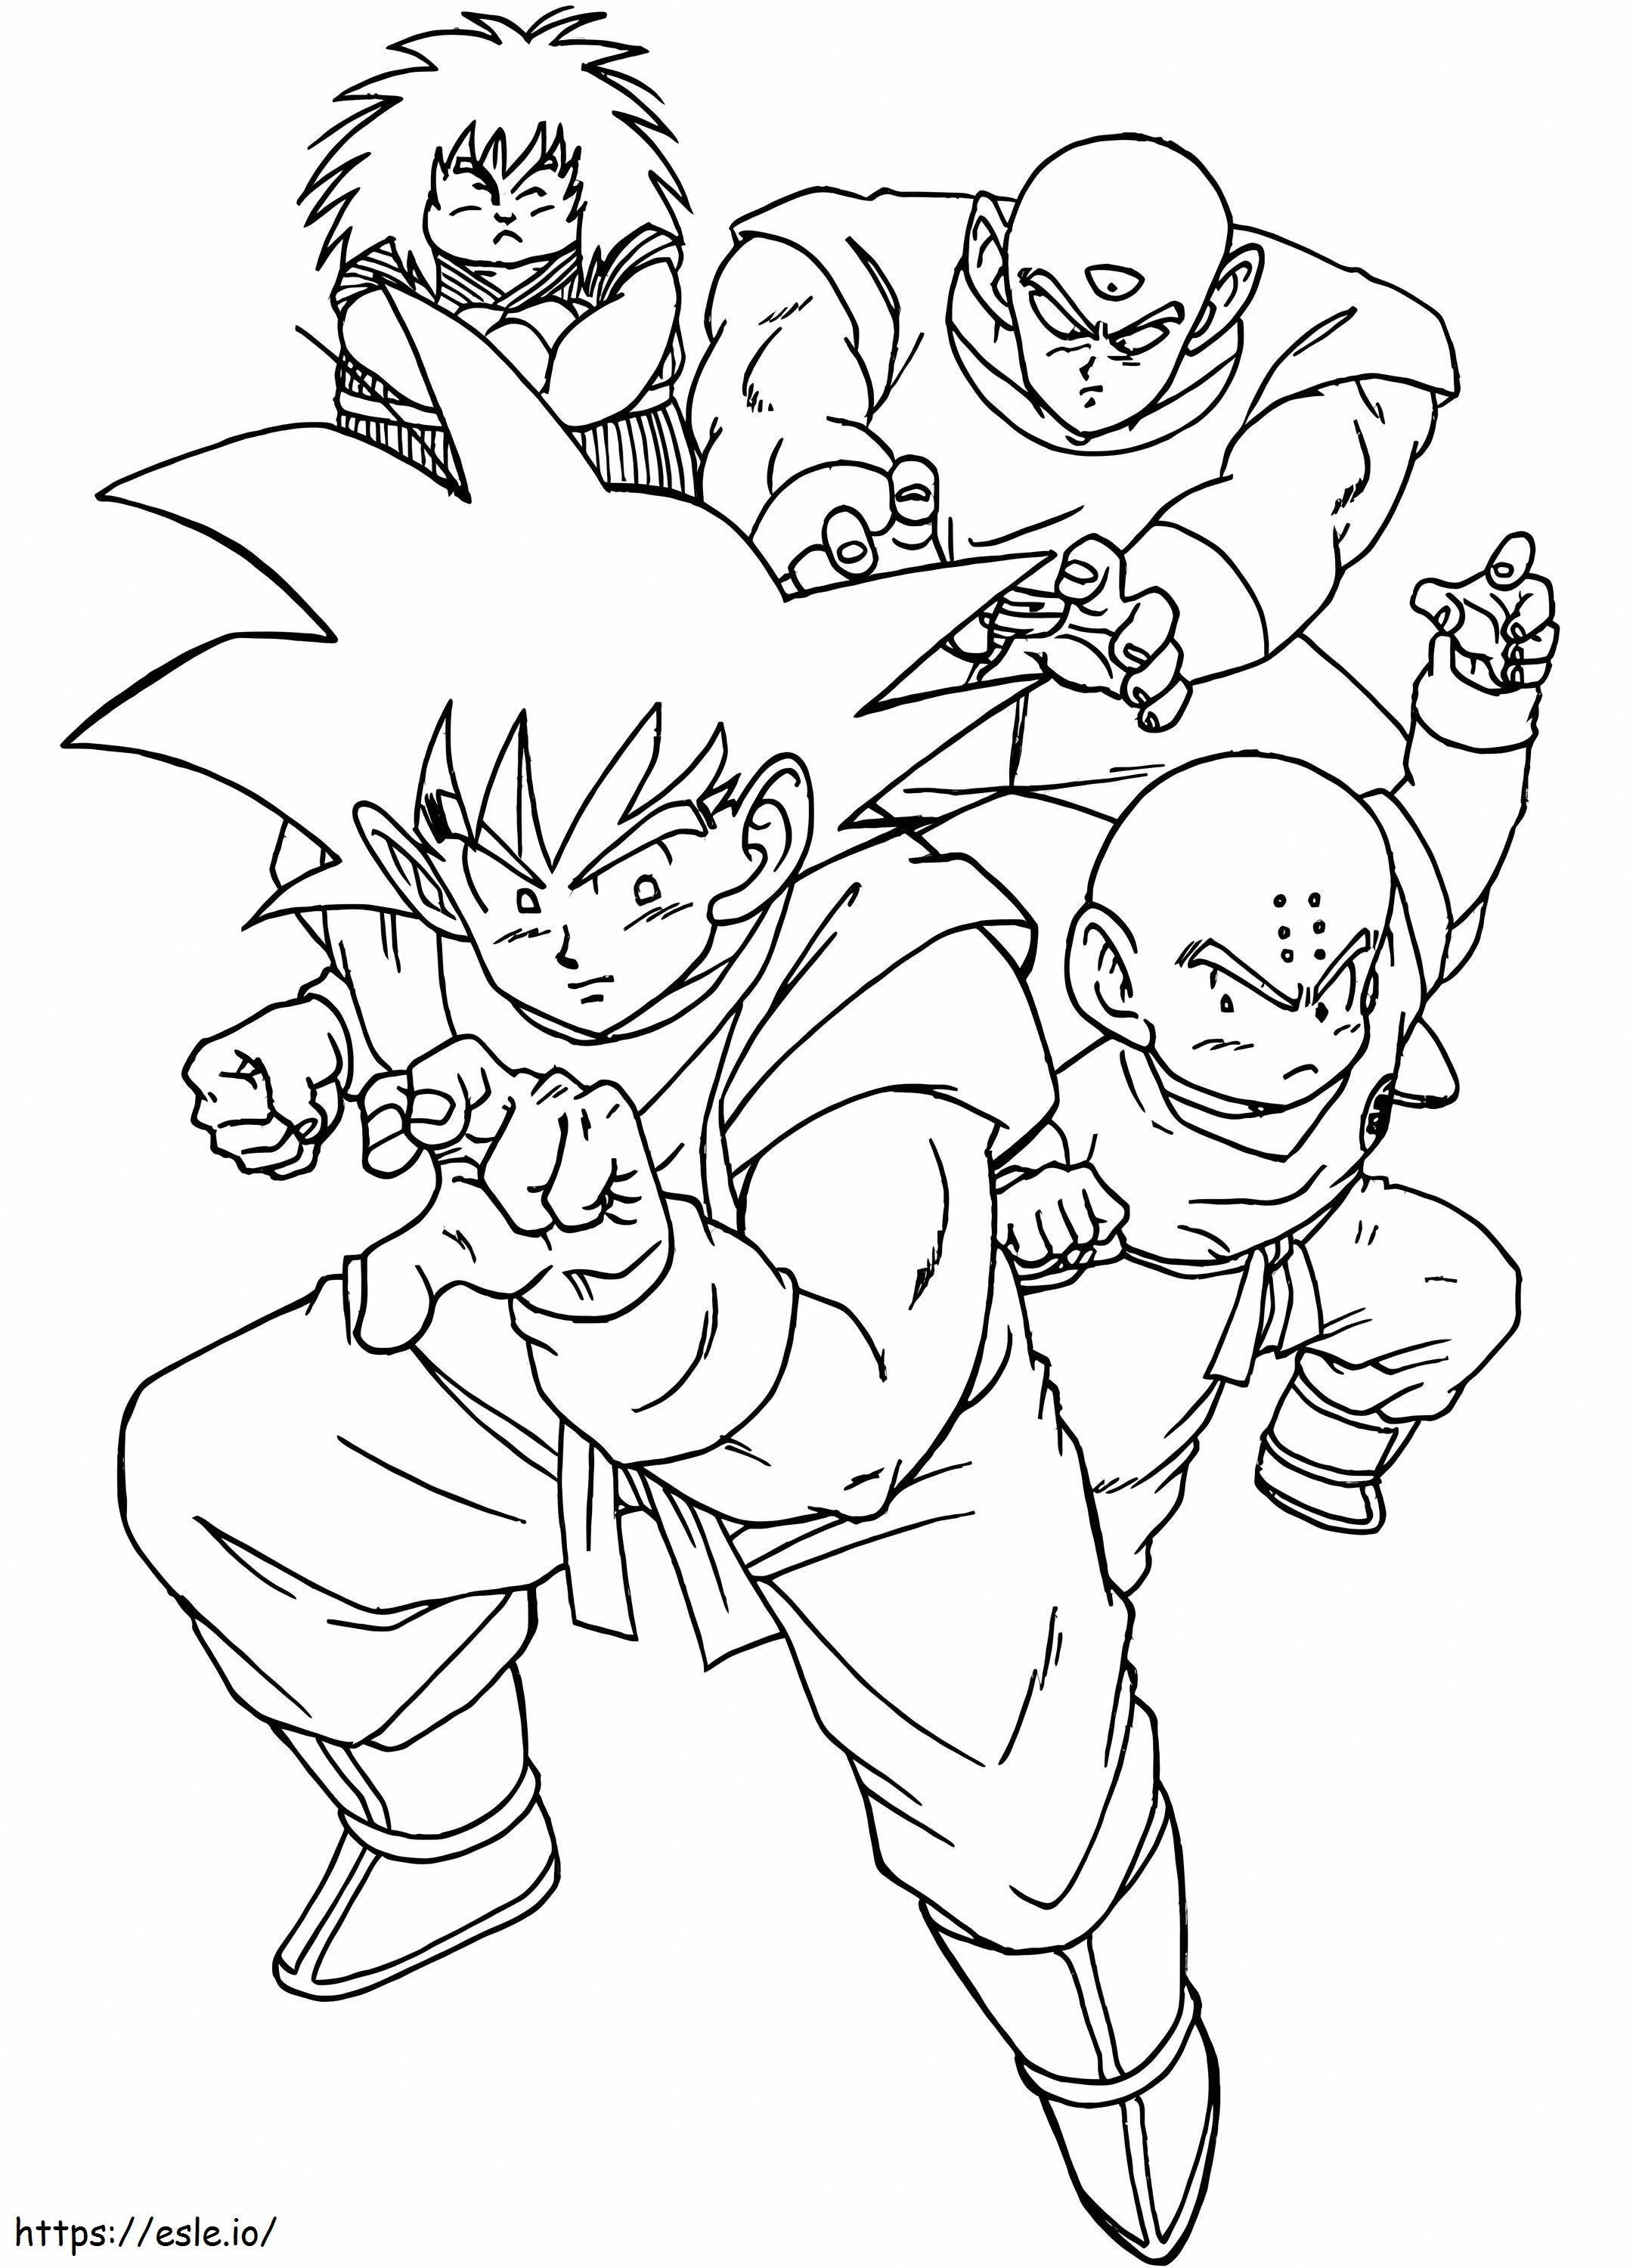 Goku ja ystävät värityskuva